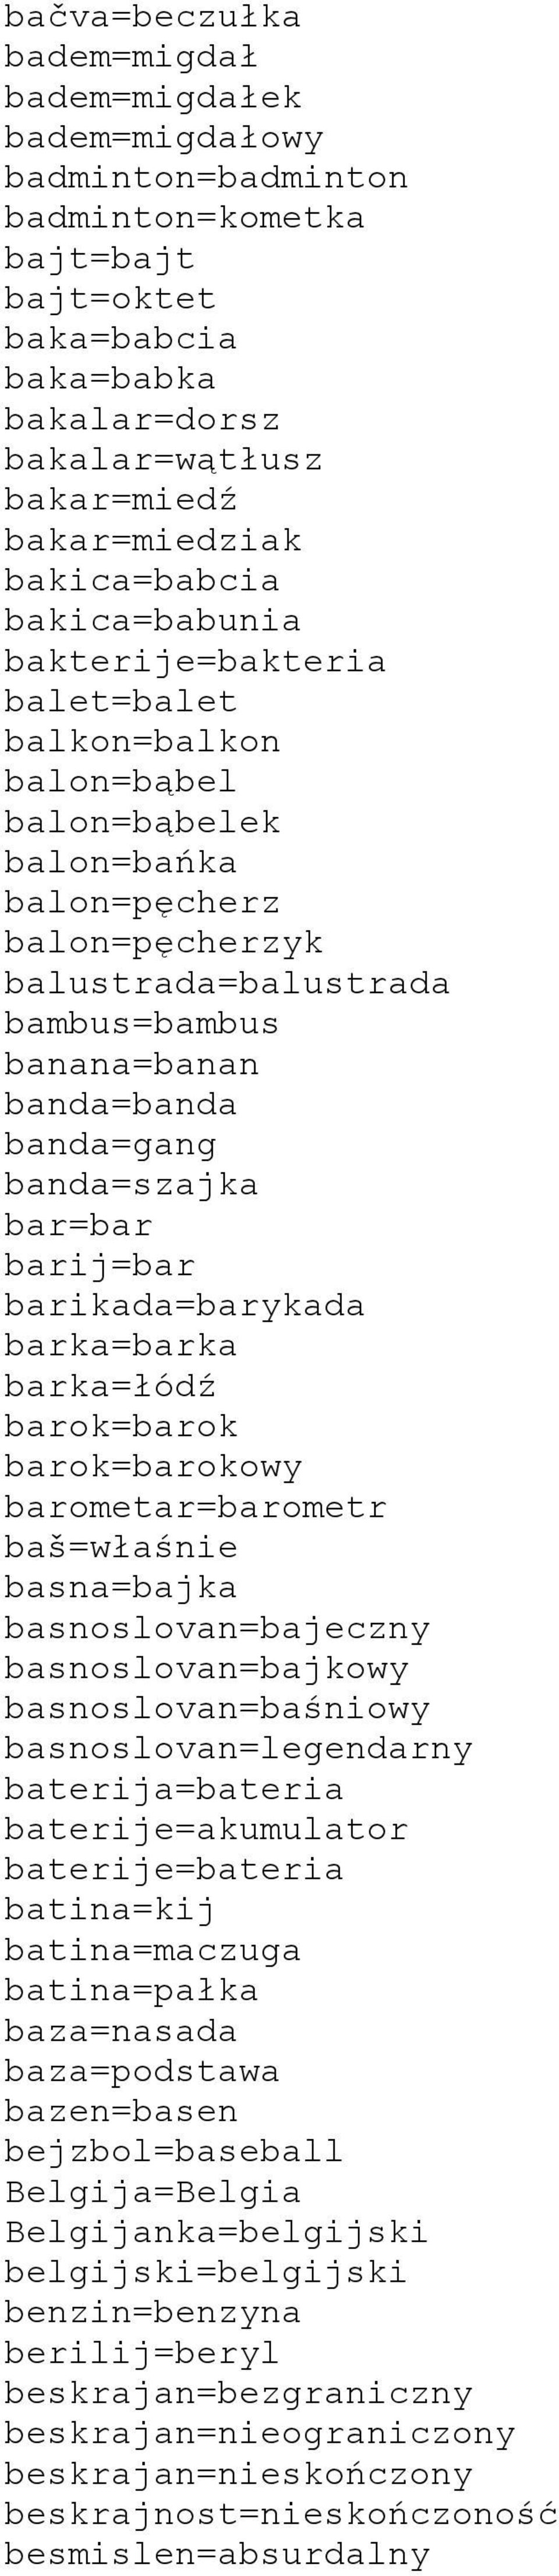 banda=banda banda=gang banda=szajka bar=bar barij=bar barikada=barykada barka=barka barka=łódź barok=barok barok=barokowy barometar=barometr baš=właśnie basna=bajka basnoslovan=bajeczny